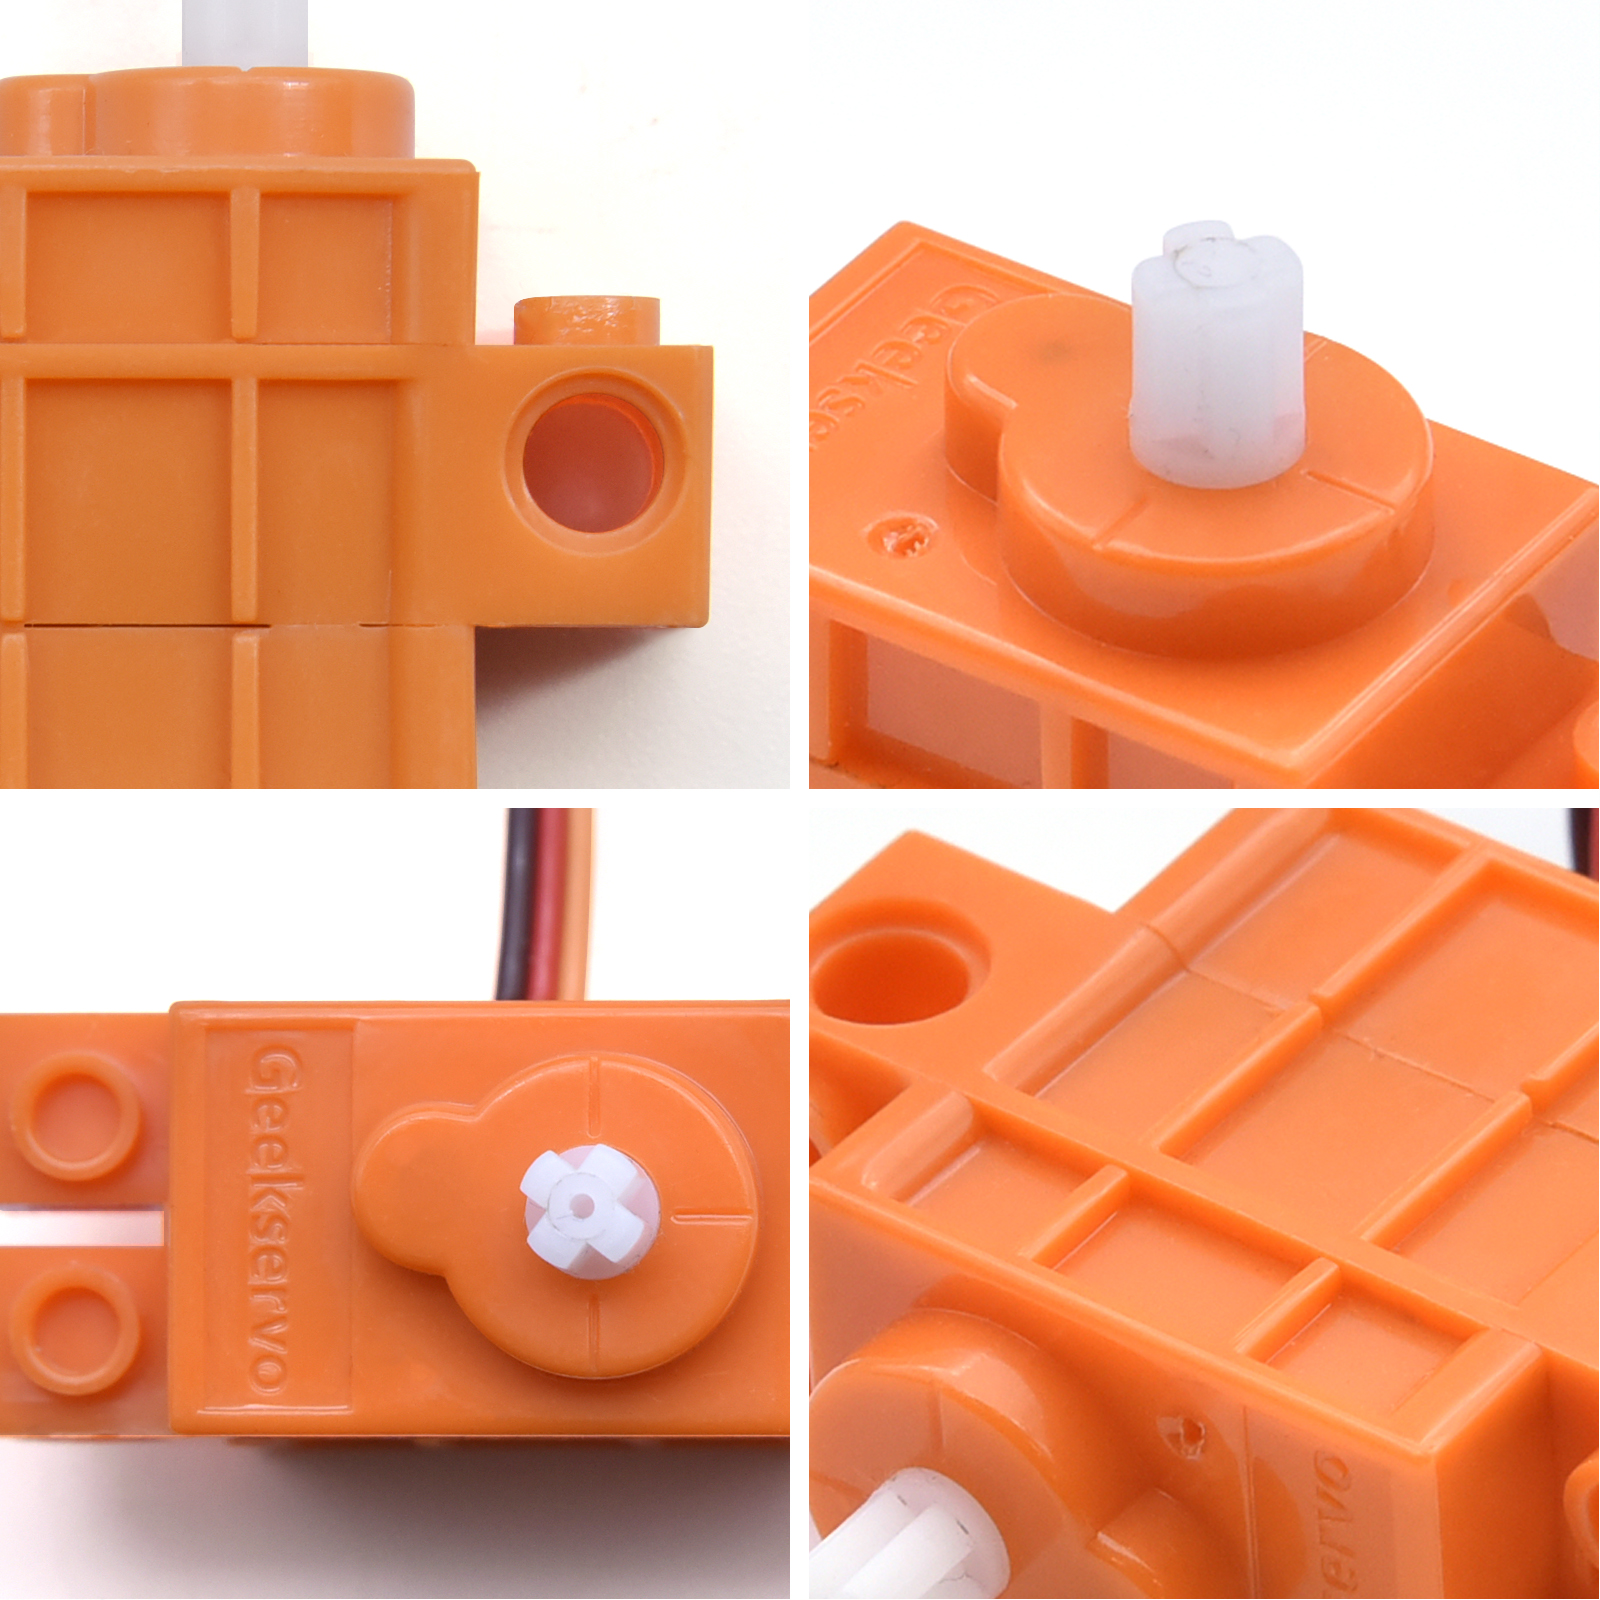 グレーオレンジオタクサーボレッドギアモータープログラム可能なDIYキット電子スマートカー用のレゴと互換性のあるワイヤーと互換性